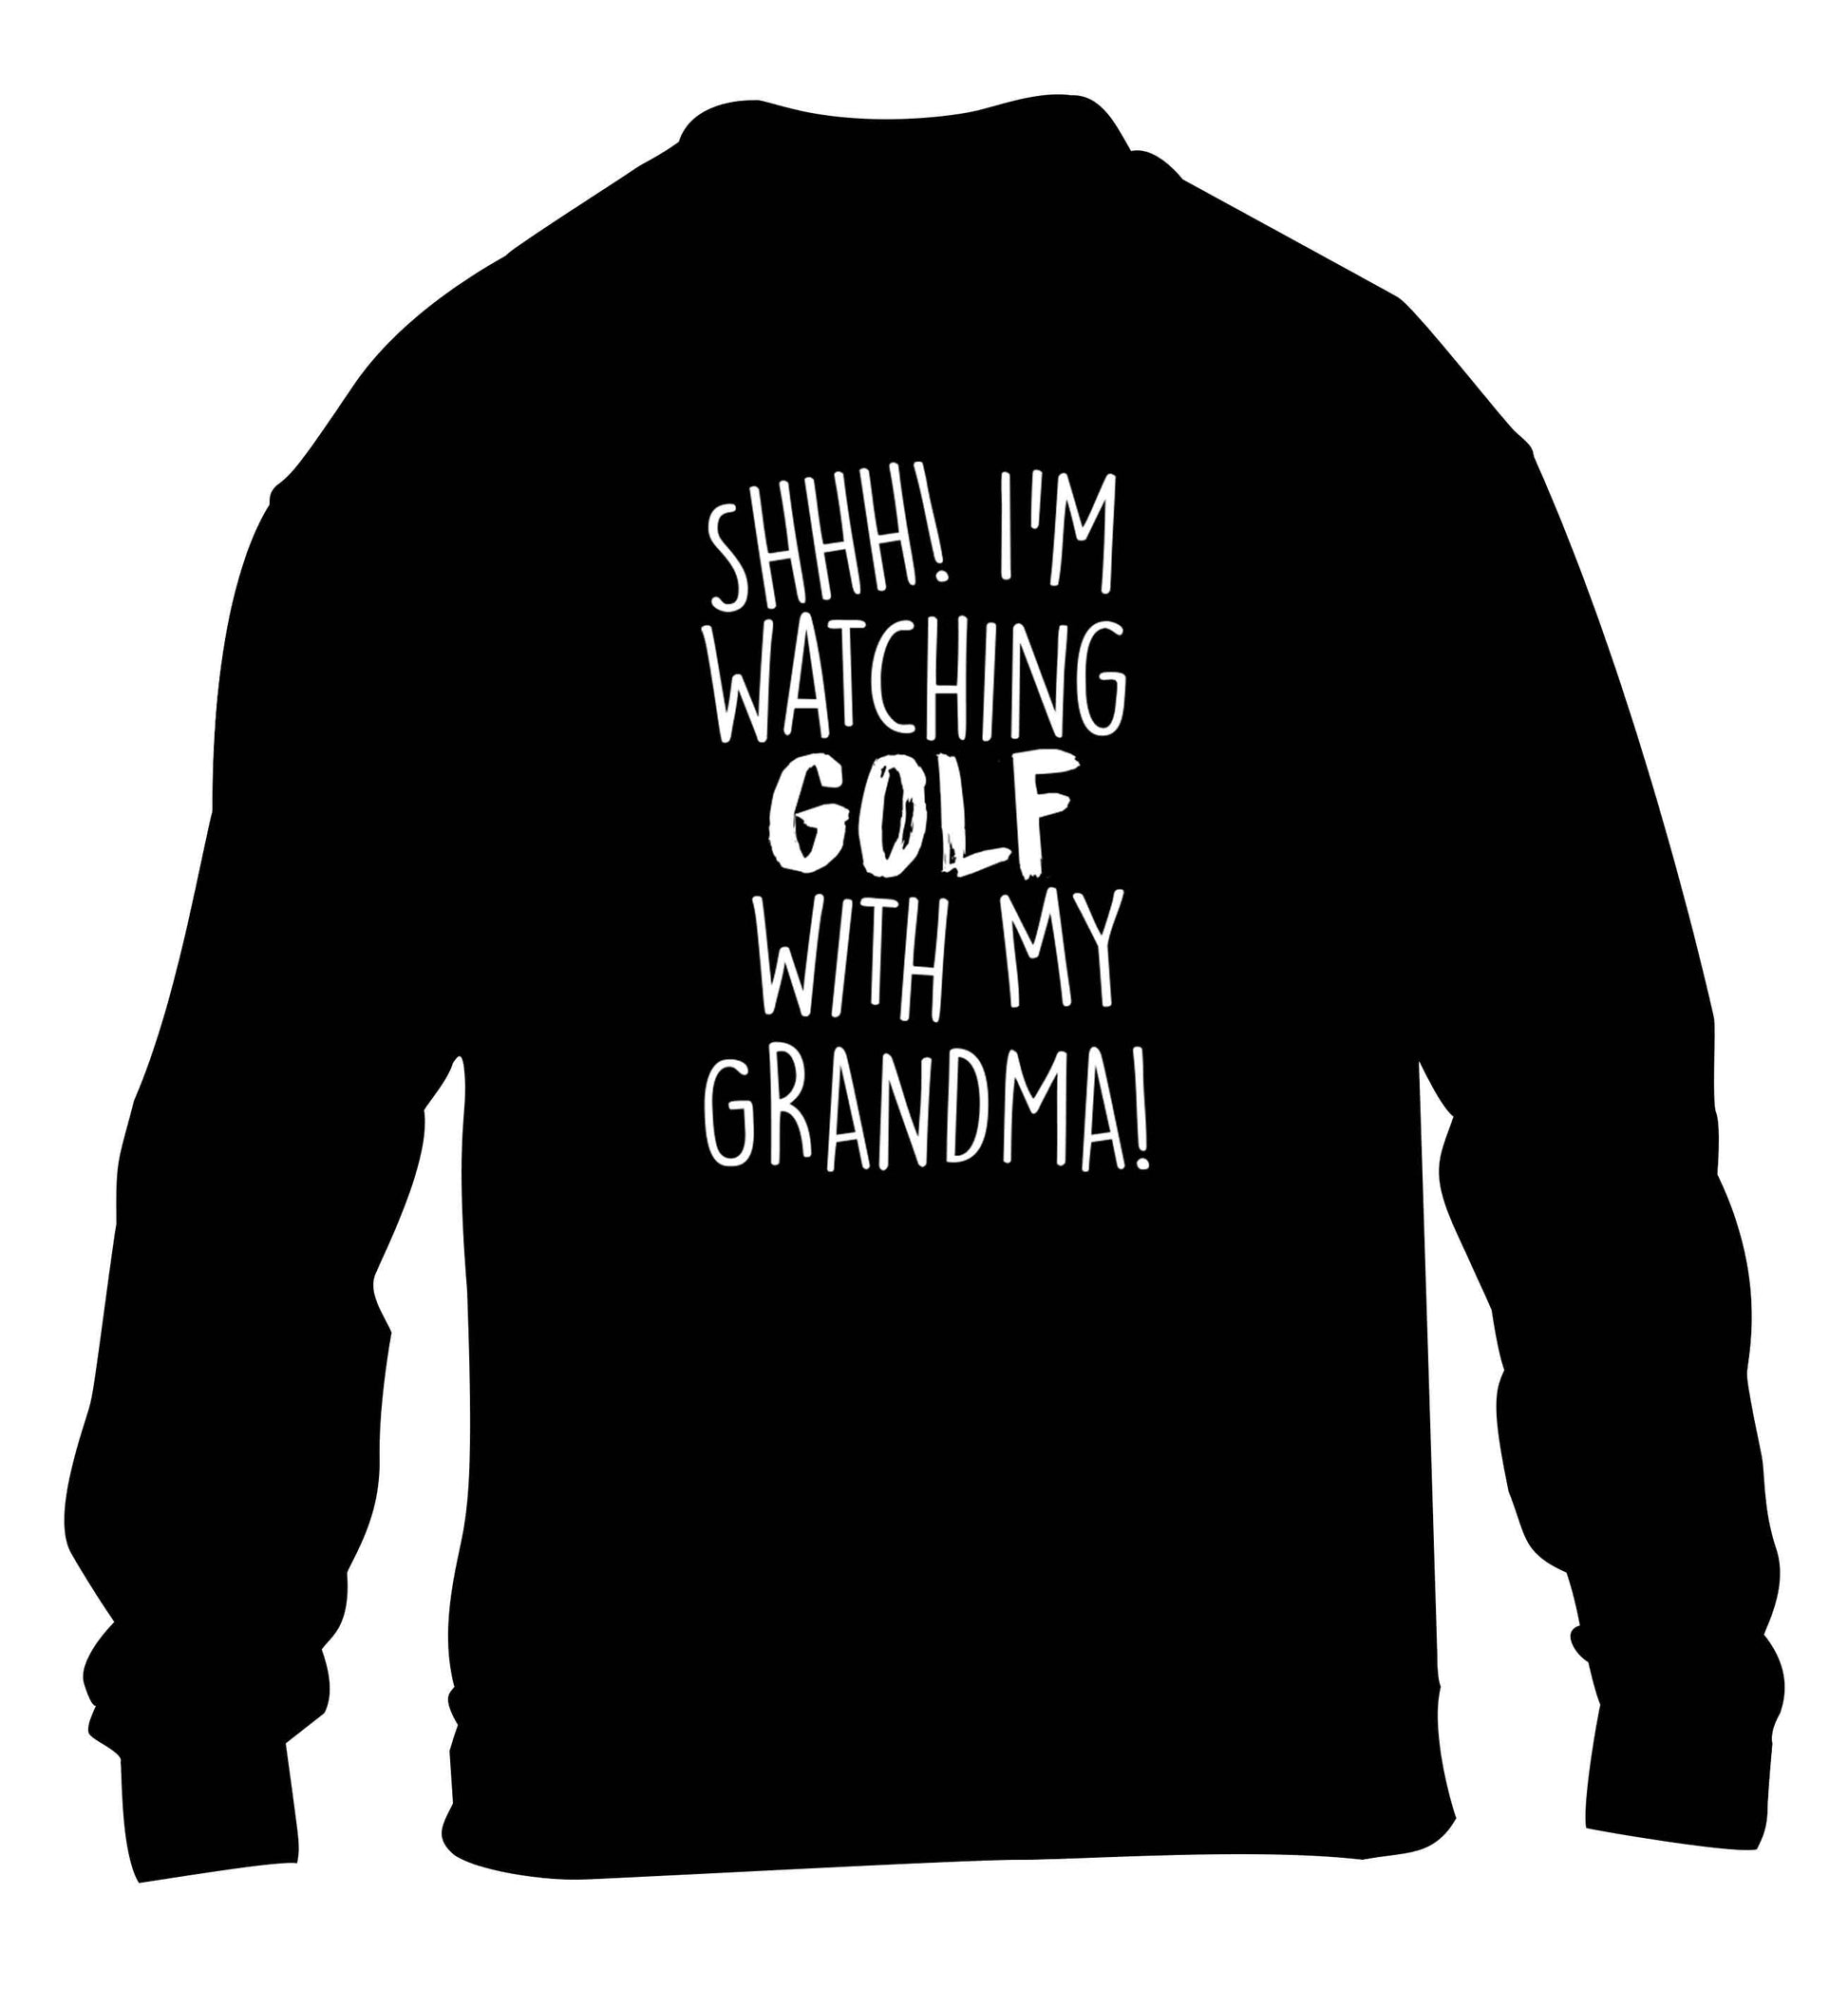 Shh I'm watching golf with my grandma children's black sweater 12-13 Years